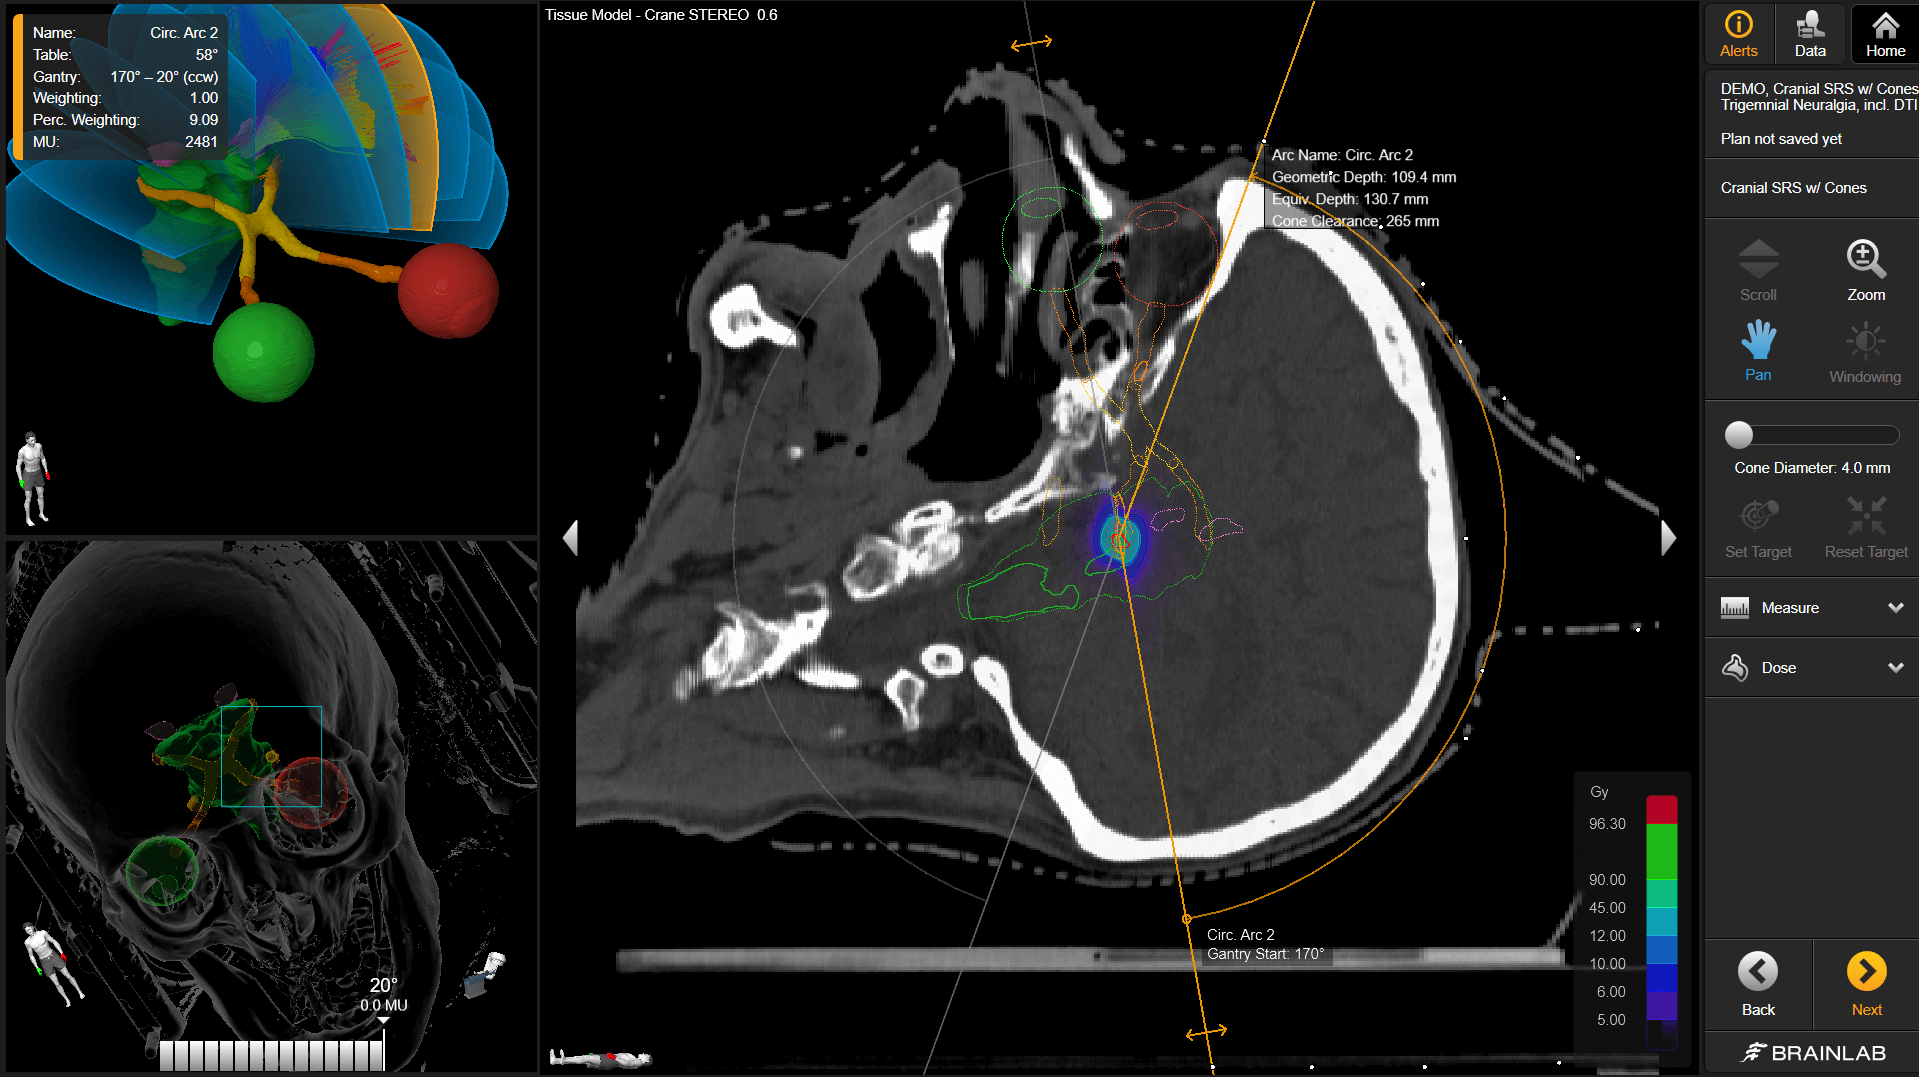 Visualizações de diferentes planos de um cérebro dentro de um plano de radioterapia do crânio, mostrando diferentes ângulos e elementos do tratamento.